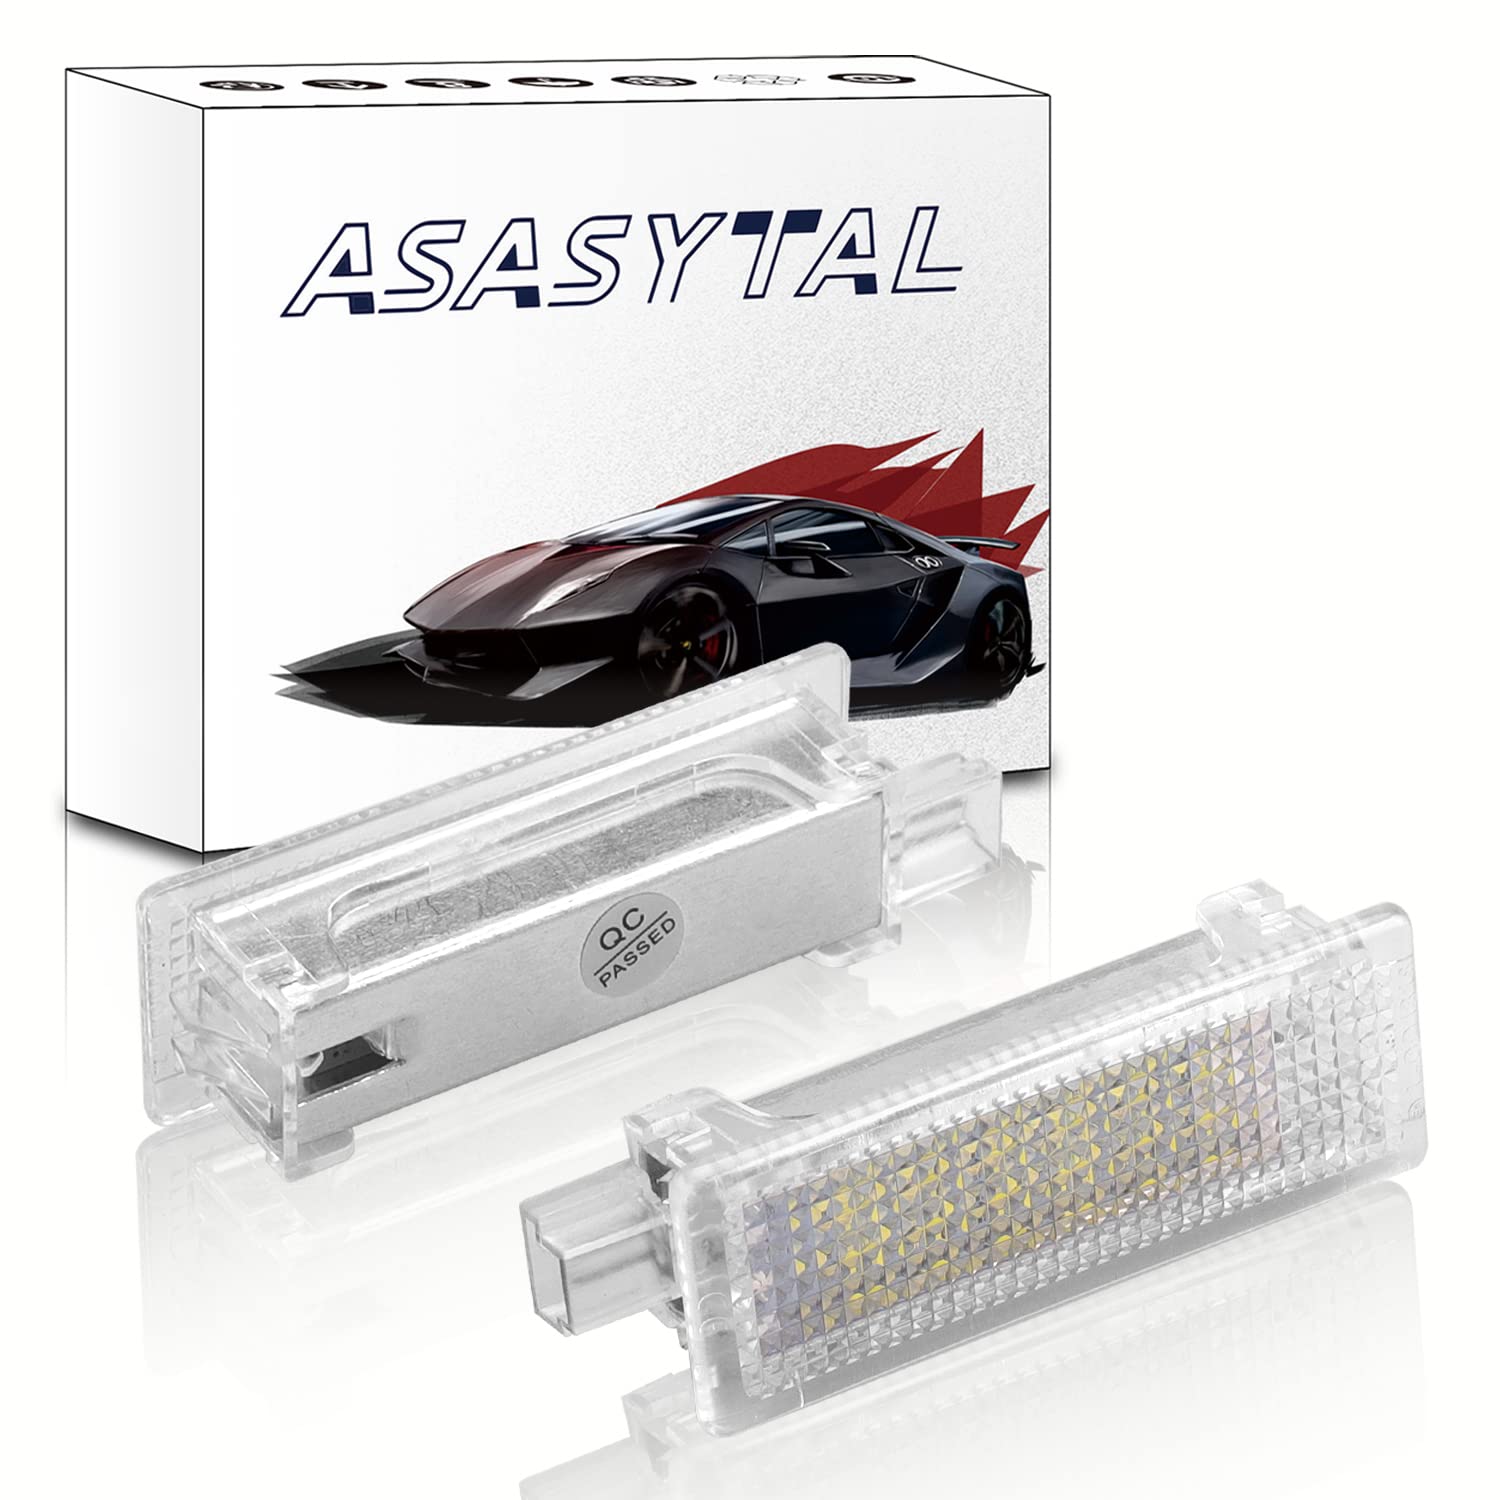 Asasytal Auto Fußraumbeleuchtung Ersatz Kfz Türen Einstiegsbeleuchtung Kompatibel mit BMW E60 E87 E70 E90 E92 E63 E65 E85 M3 MINI Z4 R50 R52 R53 Handschuhfachbirne Kofferraumlampen, 2 Stücke von Asasytal